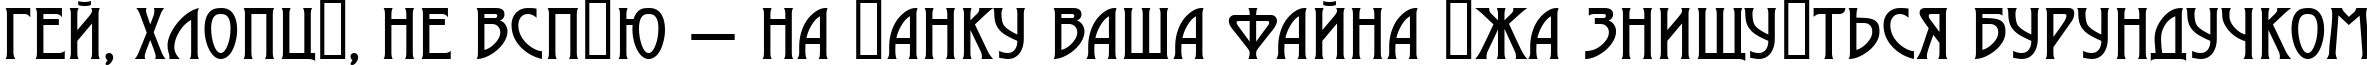 Пример написания шрифтом a_Moderno текста на украинском